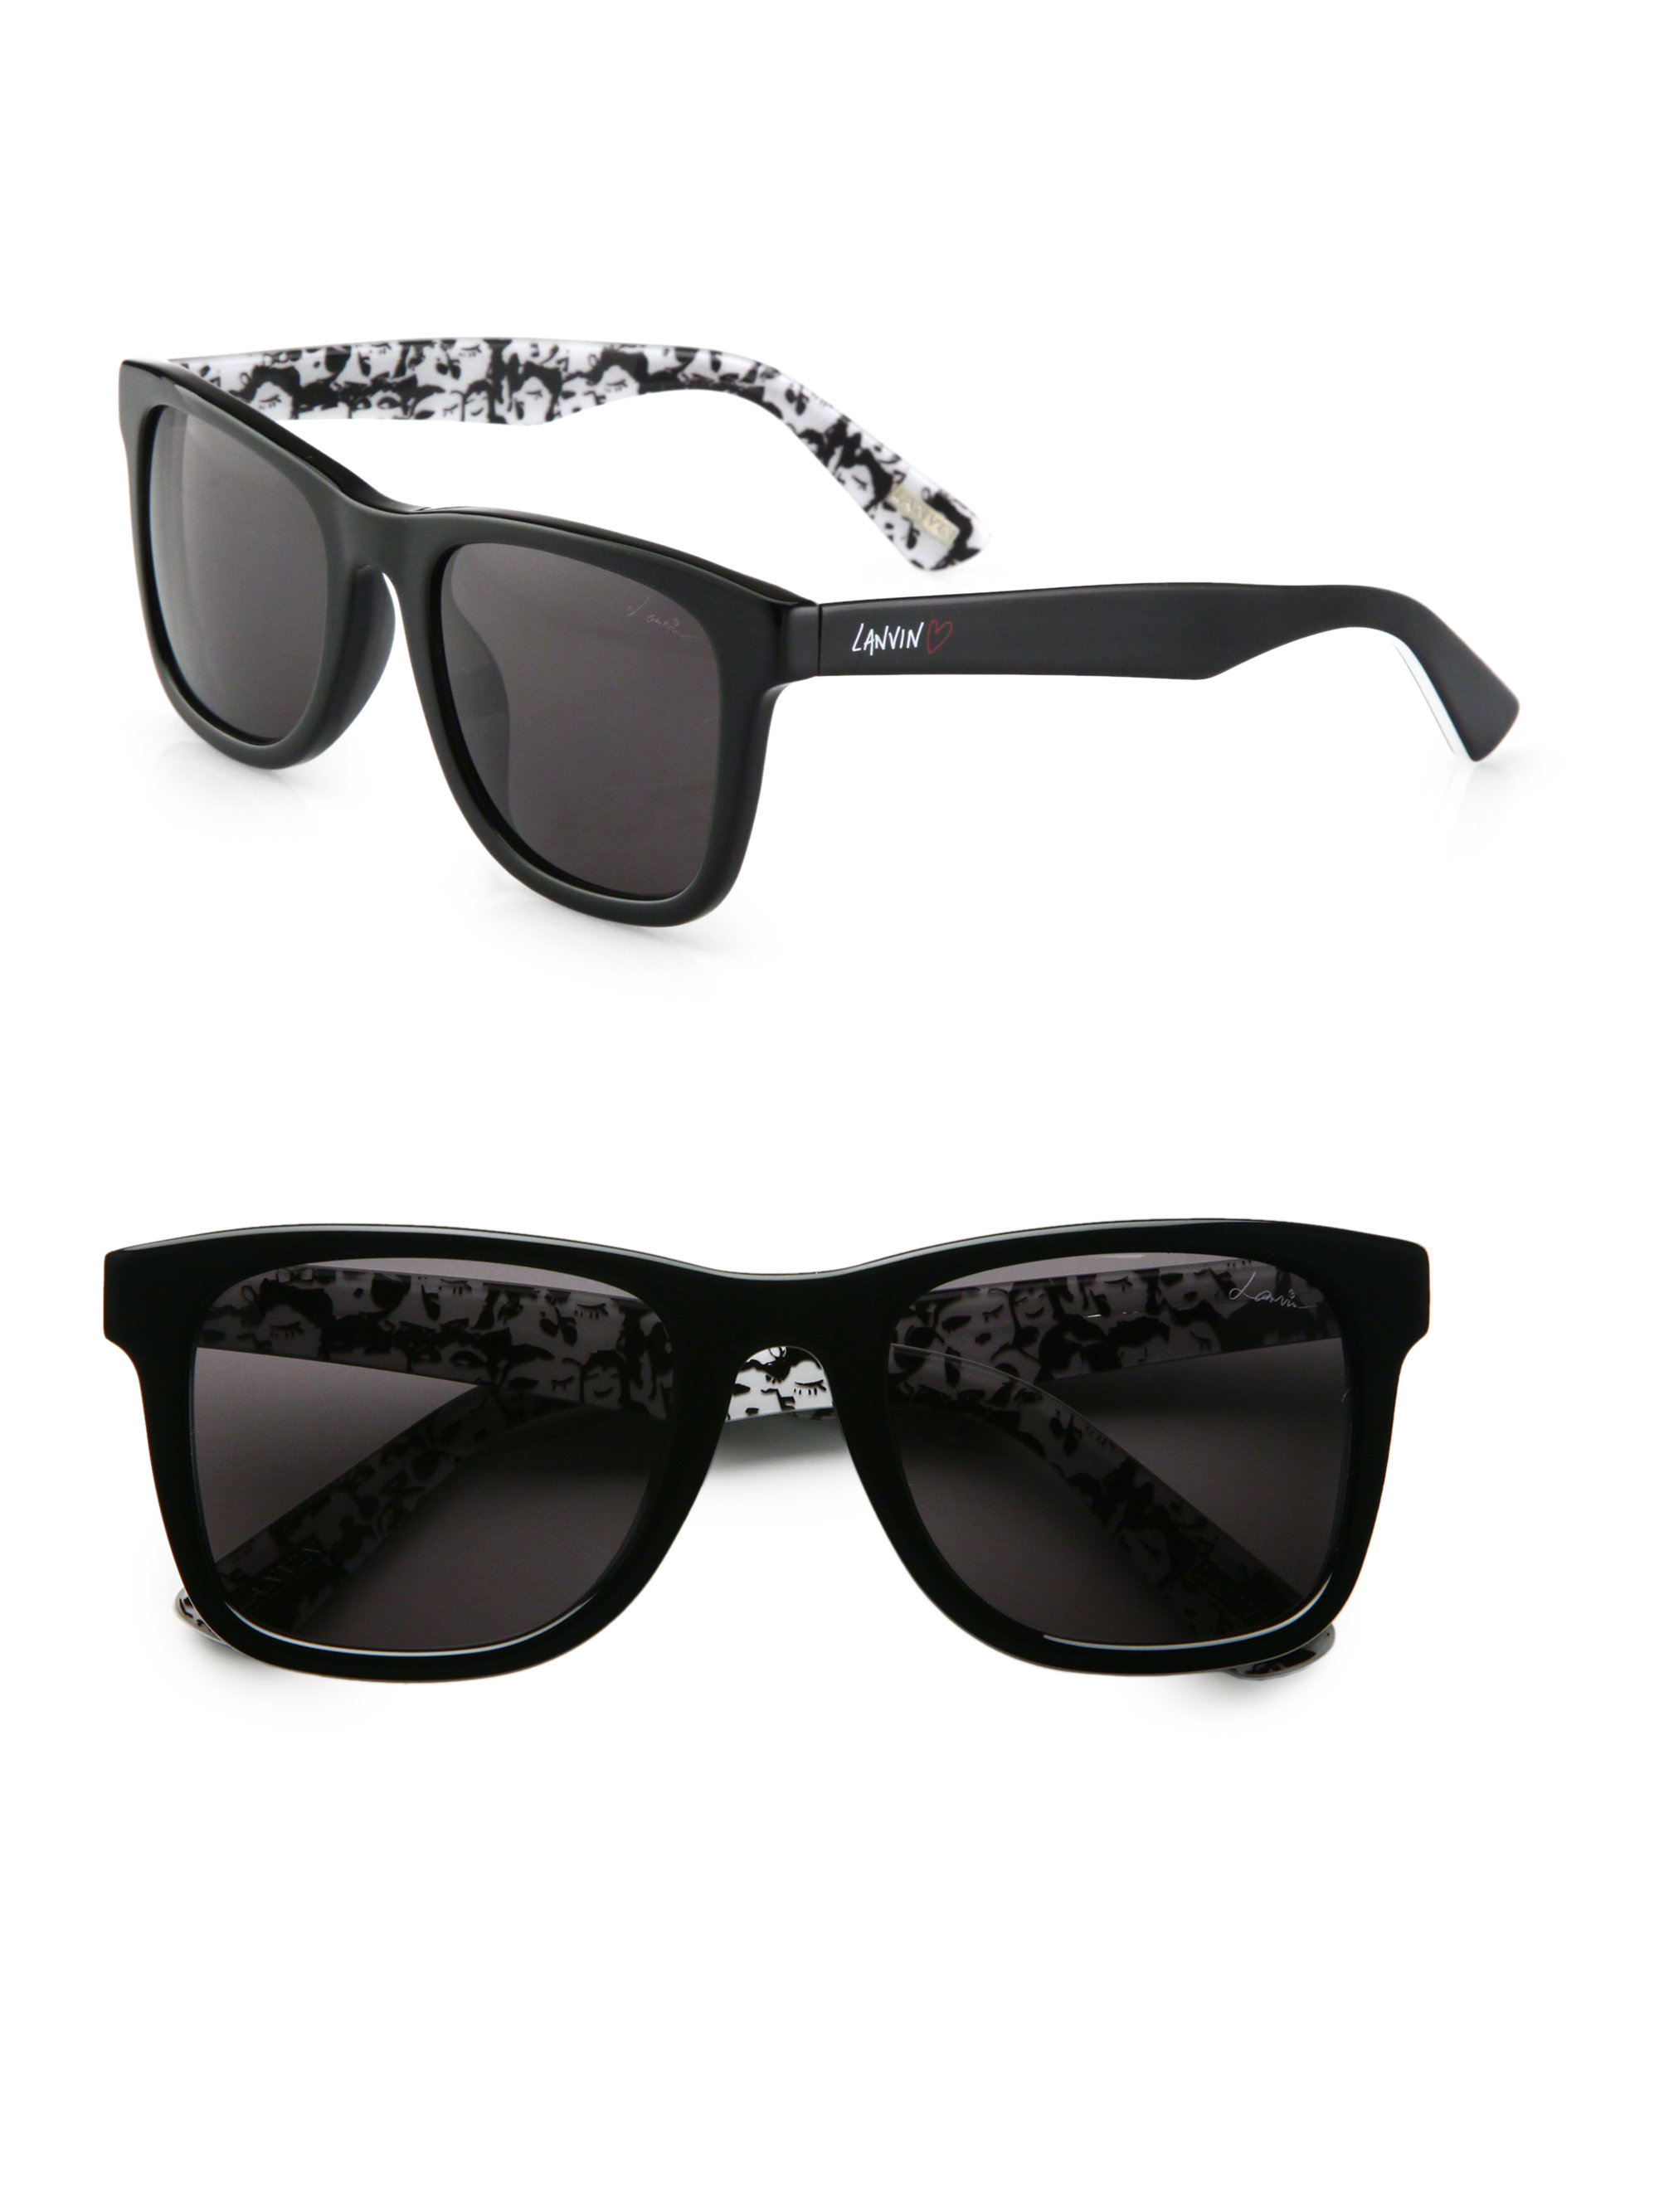 Lanvin Resin Wayfarer Sunglasses In Black For Men Lyst 